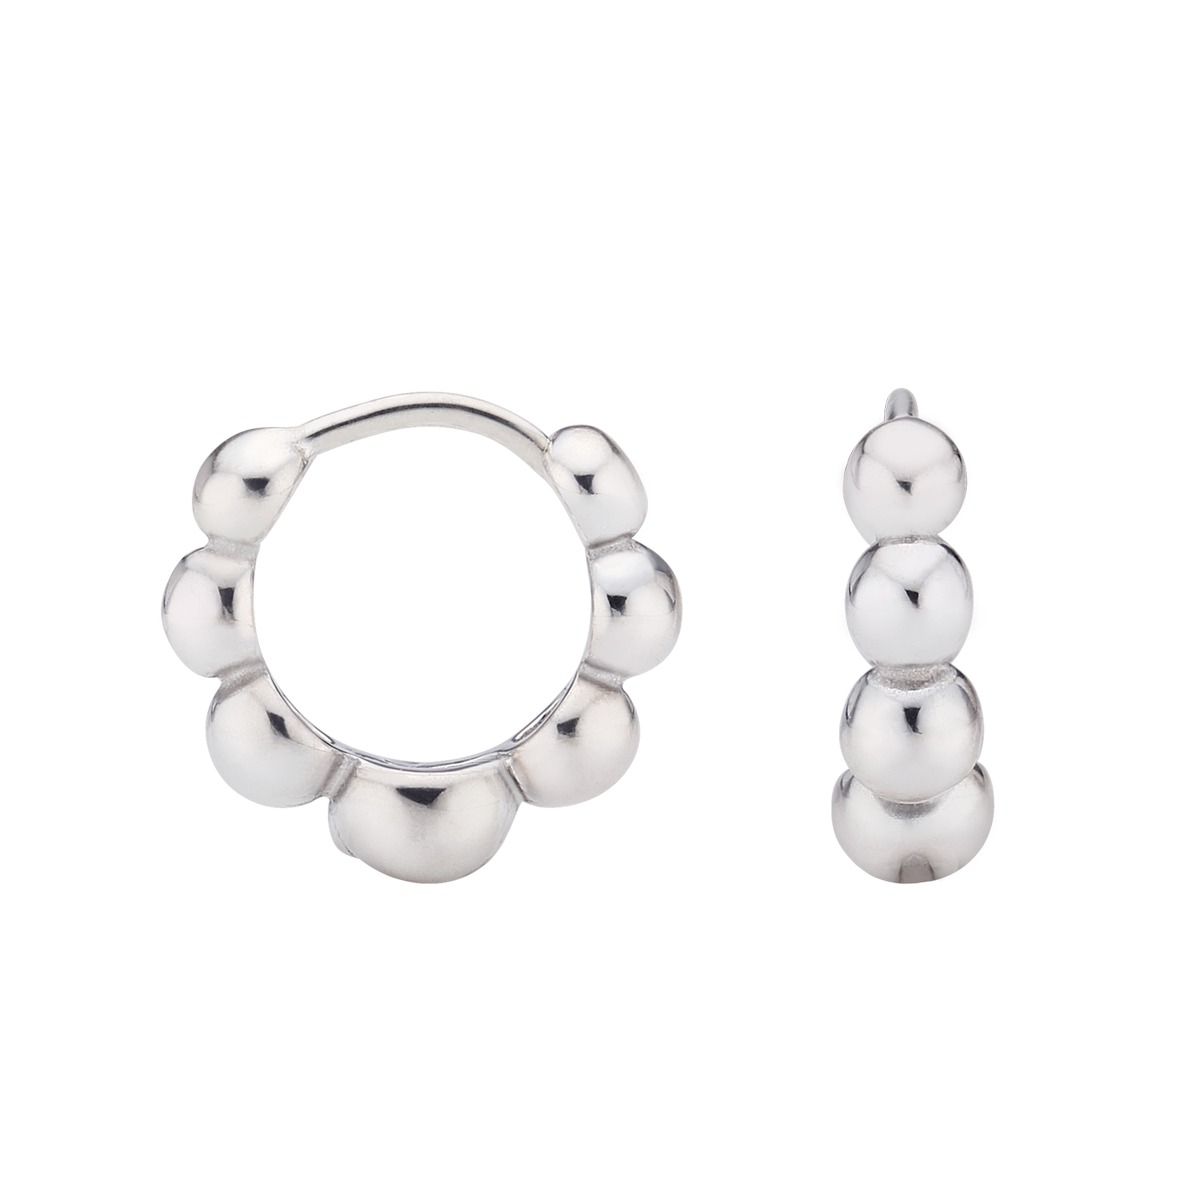 Chewisty earrings (pair)